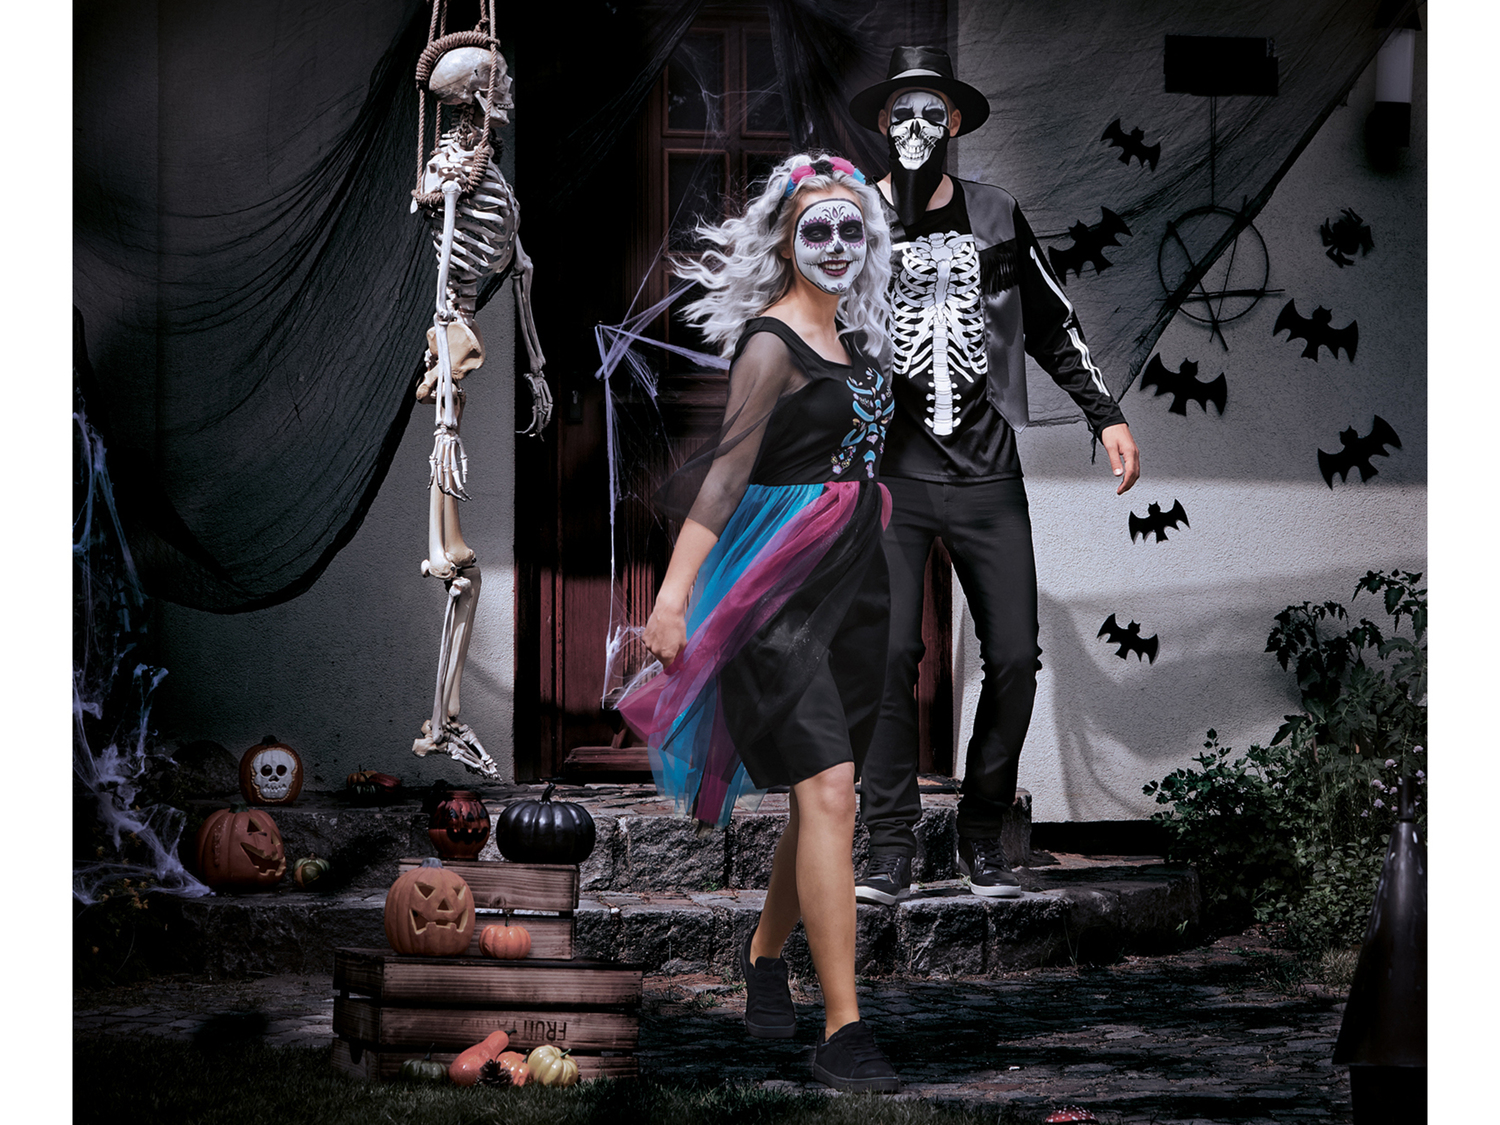 Costume di Halloween per uomo Sgs_tuv_saar, prezzo 9.99 &#8364; 
Misure: M-XL
Taglie ...